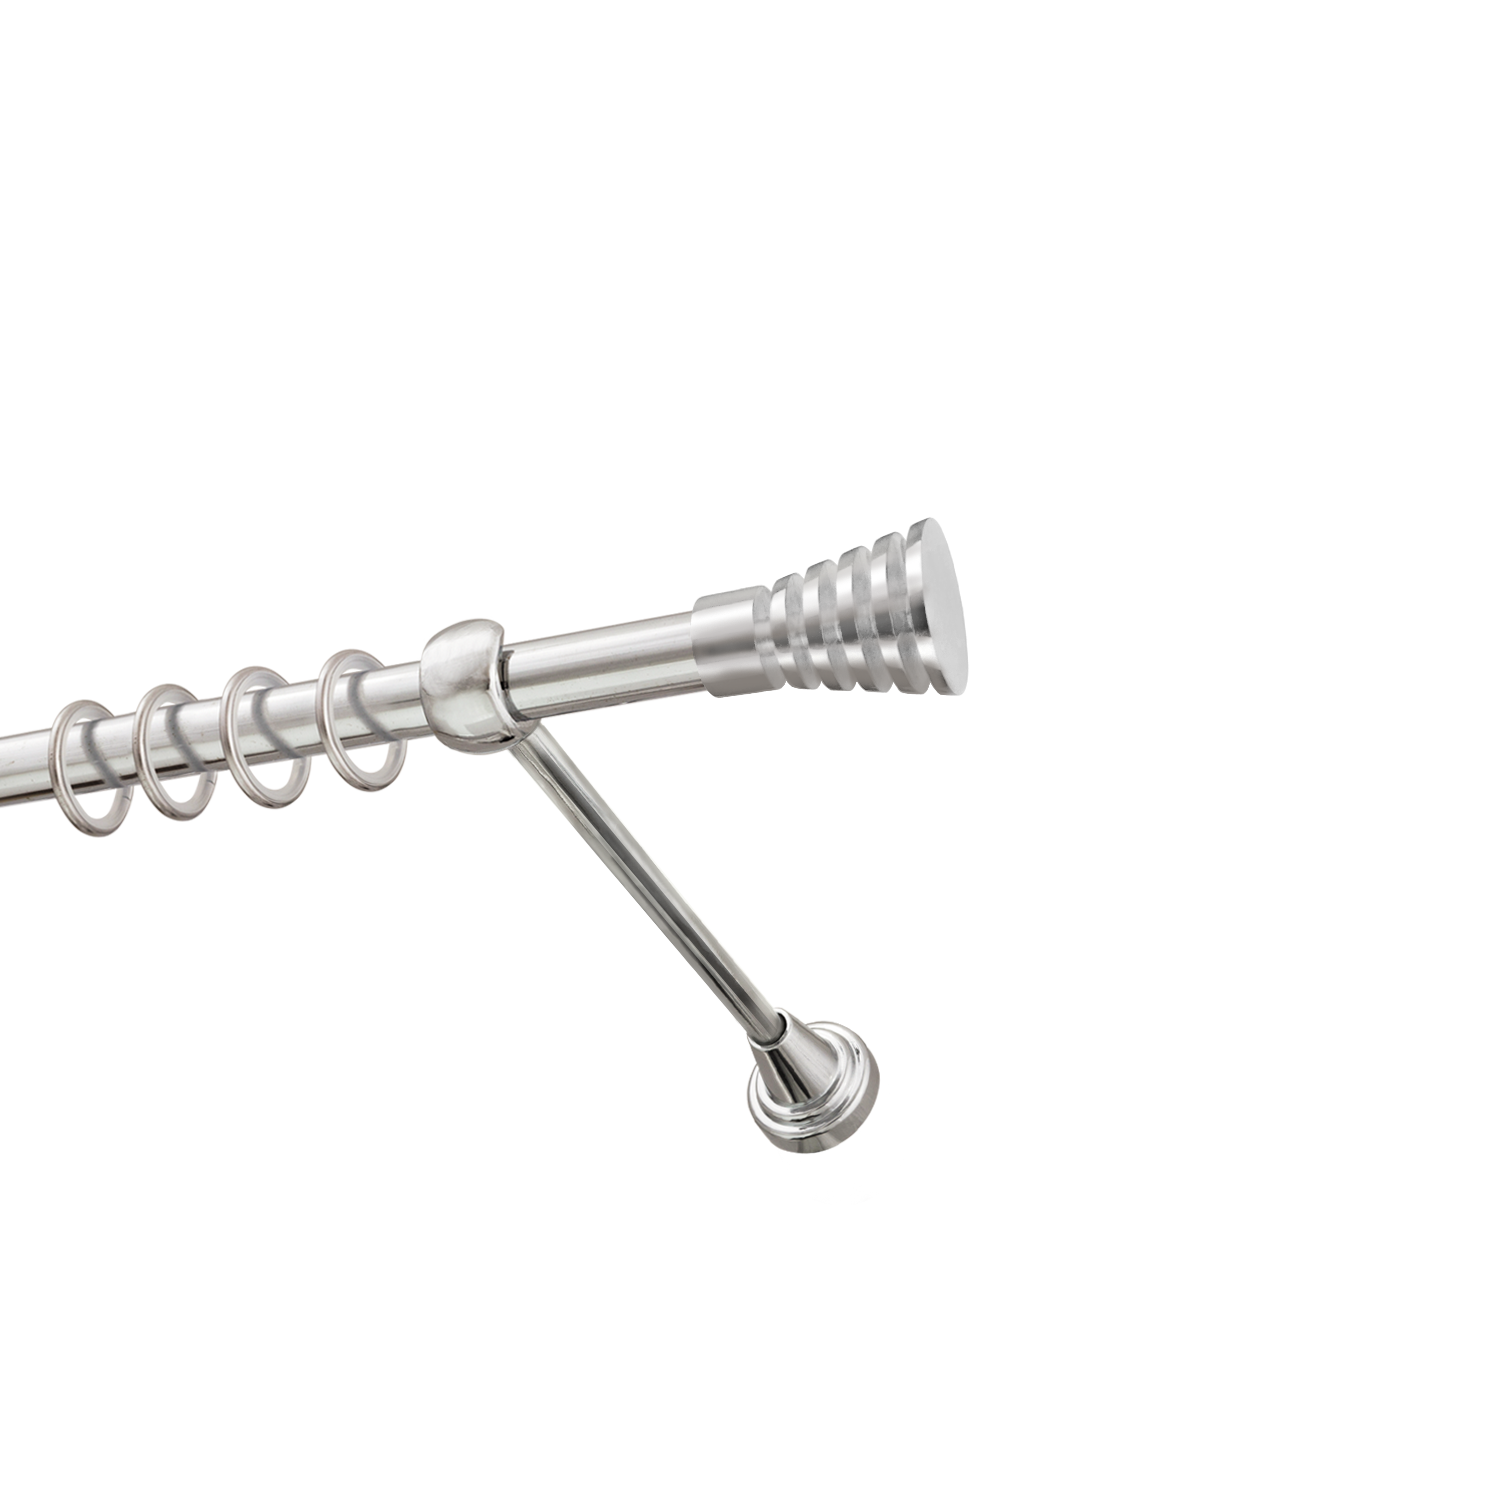 Металлический карниз для штор Верона, однорядный 16 мм, серебро, гладкая штанга, длина 160 см - фото Wikidecor.ru